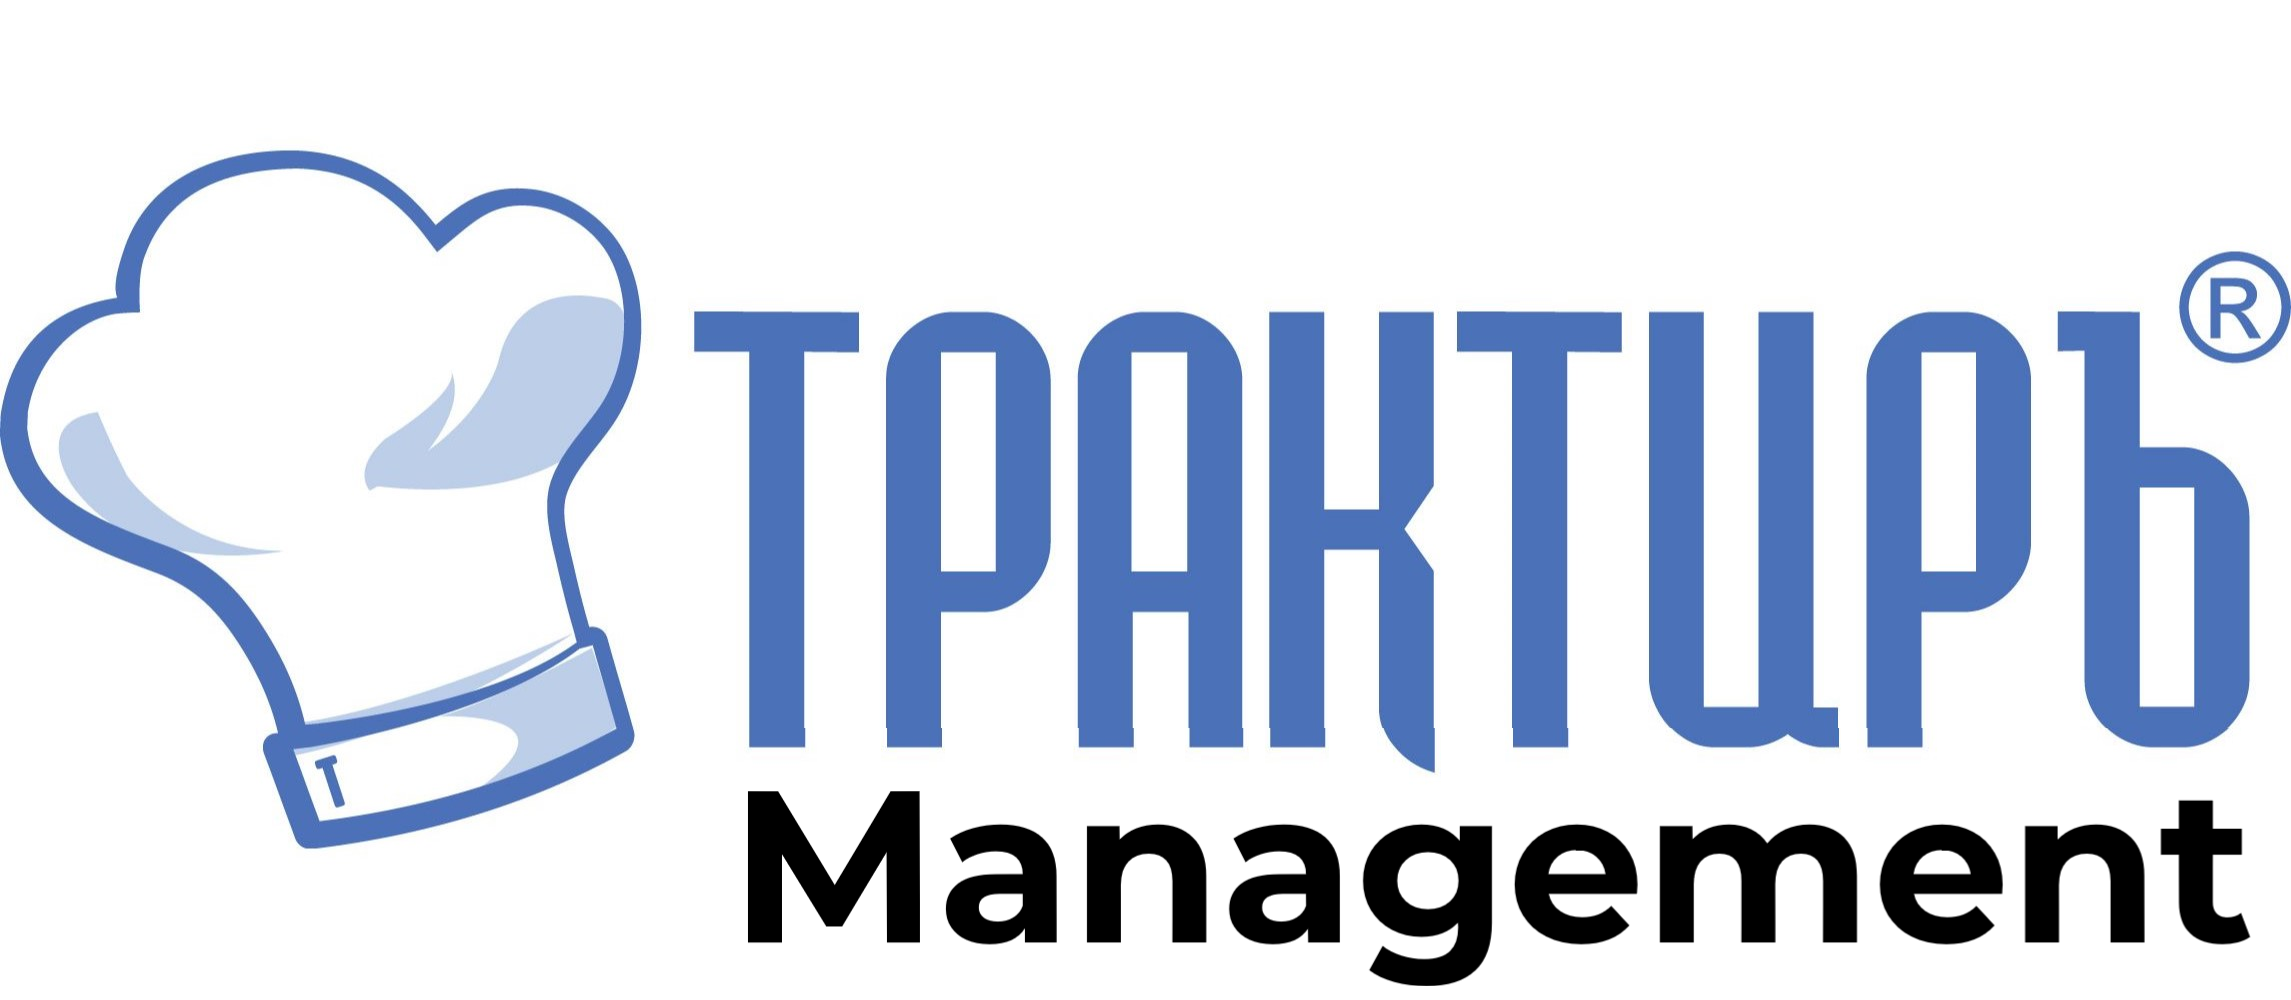 Трактиръ: Management в Петропавловске-Камчатском